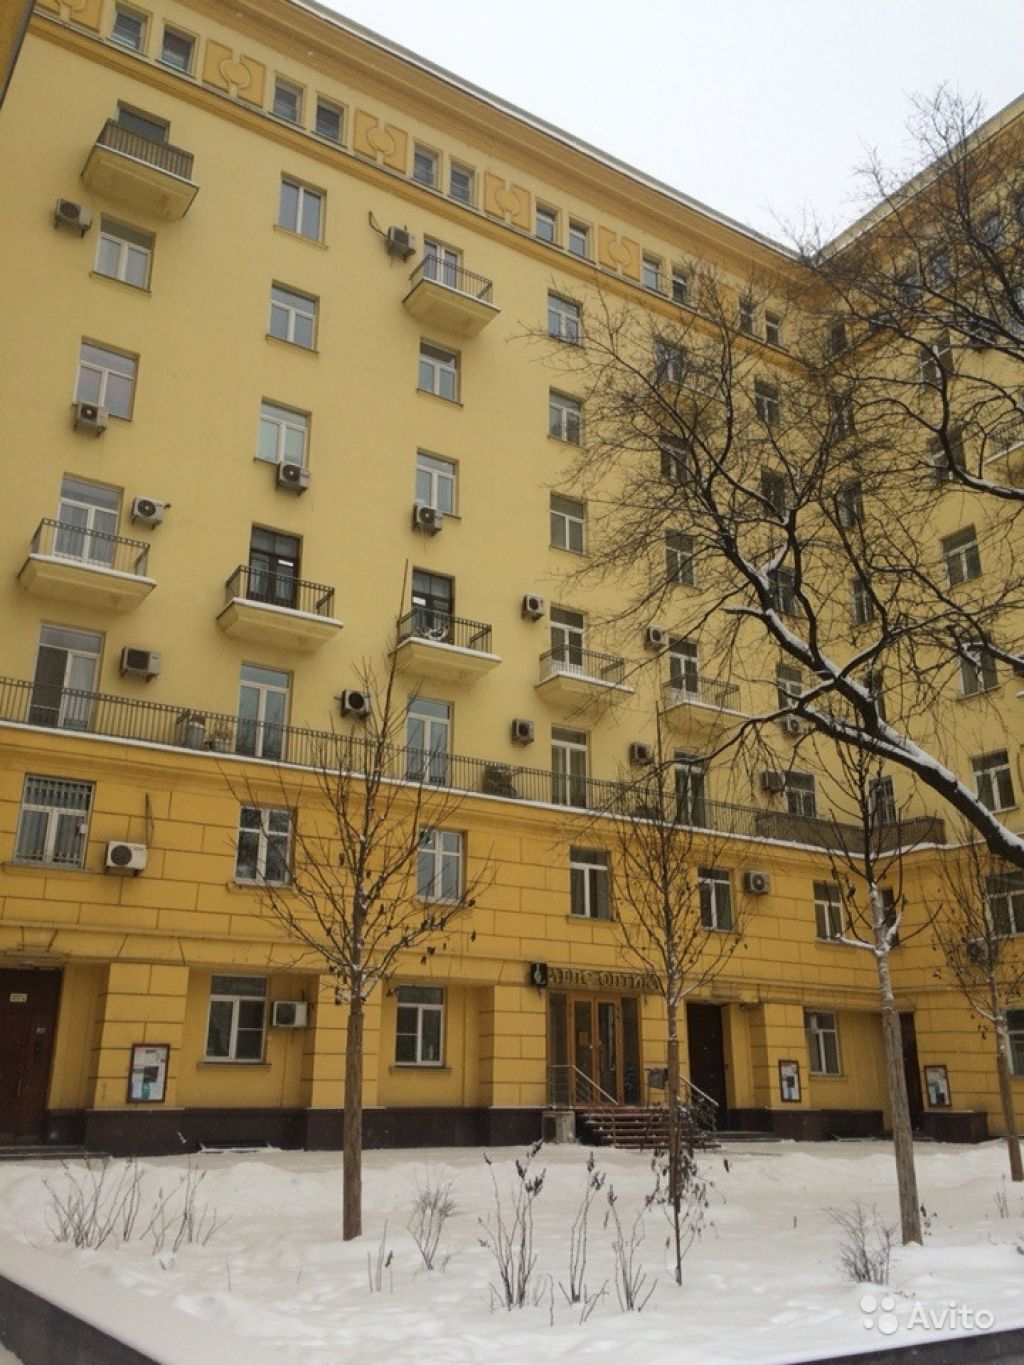 Продам квартиру 4-к квартира 87.5 м² на 7 этаже 8-этажного кирпичного дома в Москве. Фото 1